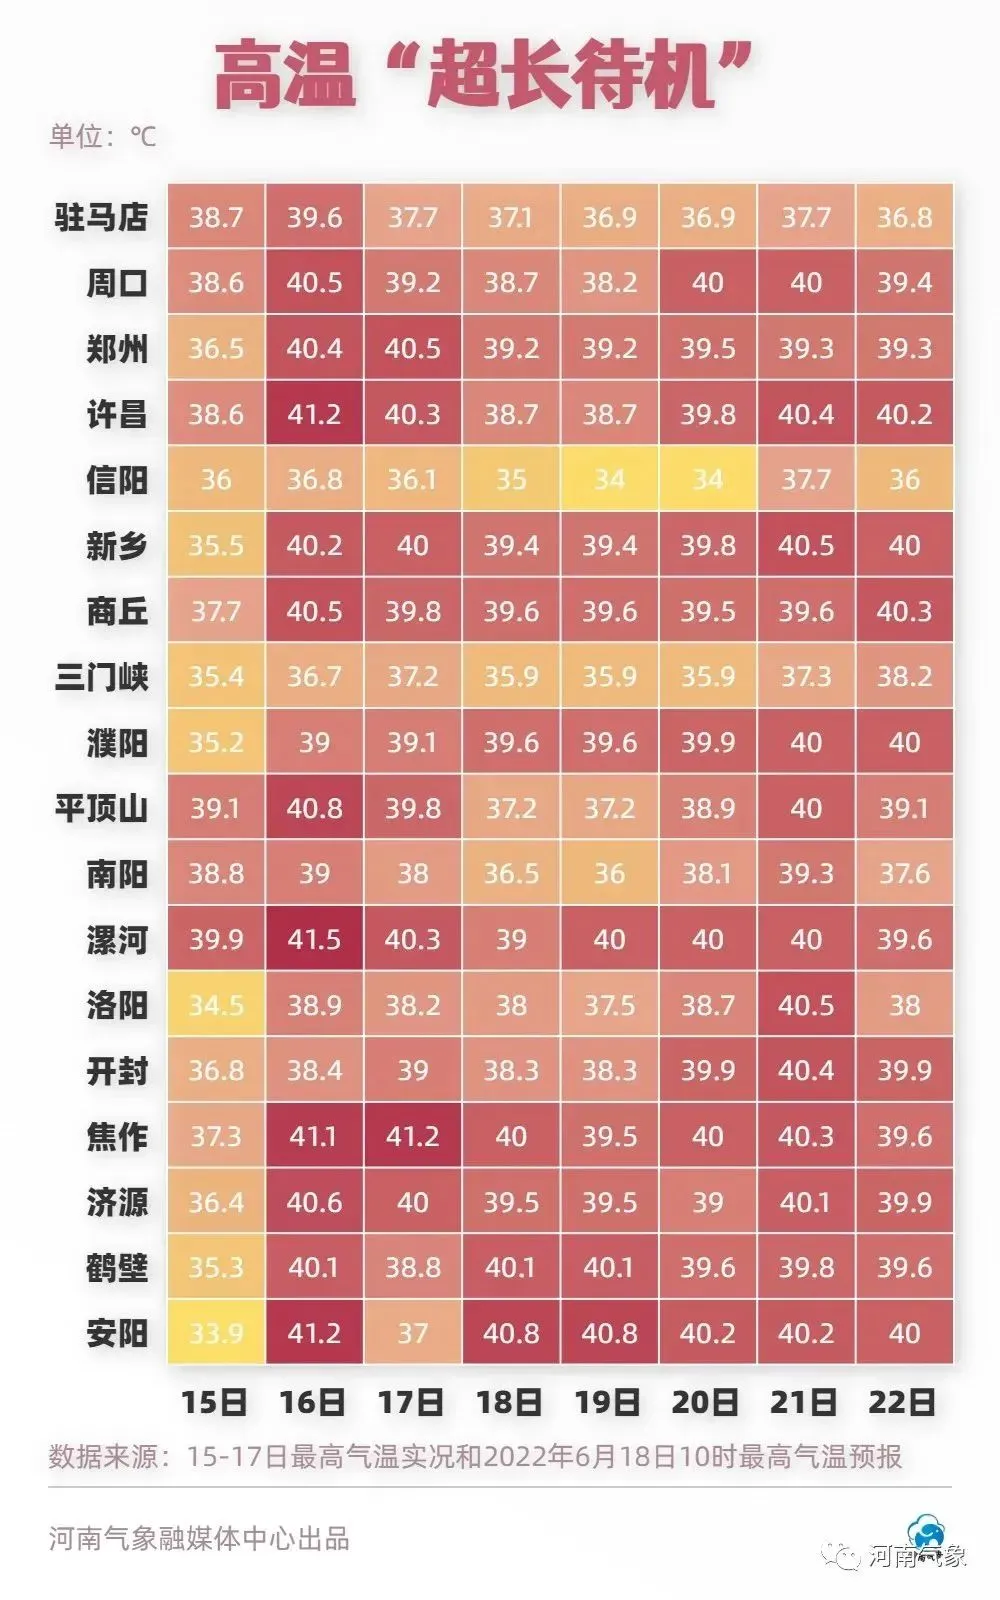 河南最高地表温度达74.1℃ 郑州站最高地表温度64.3℃